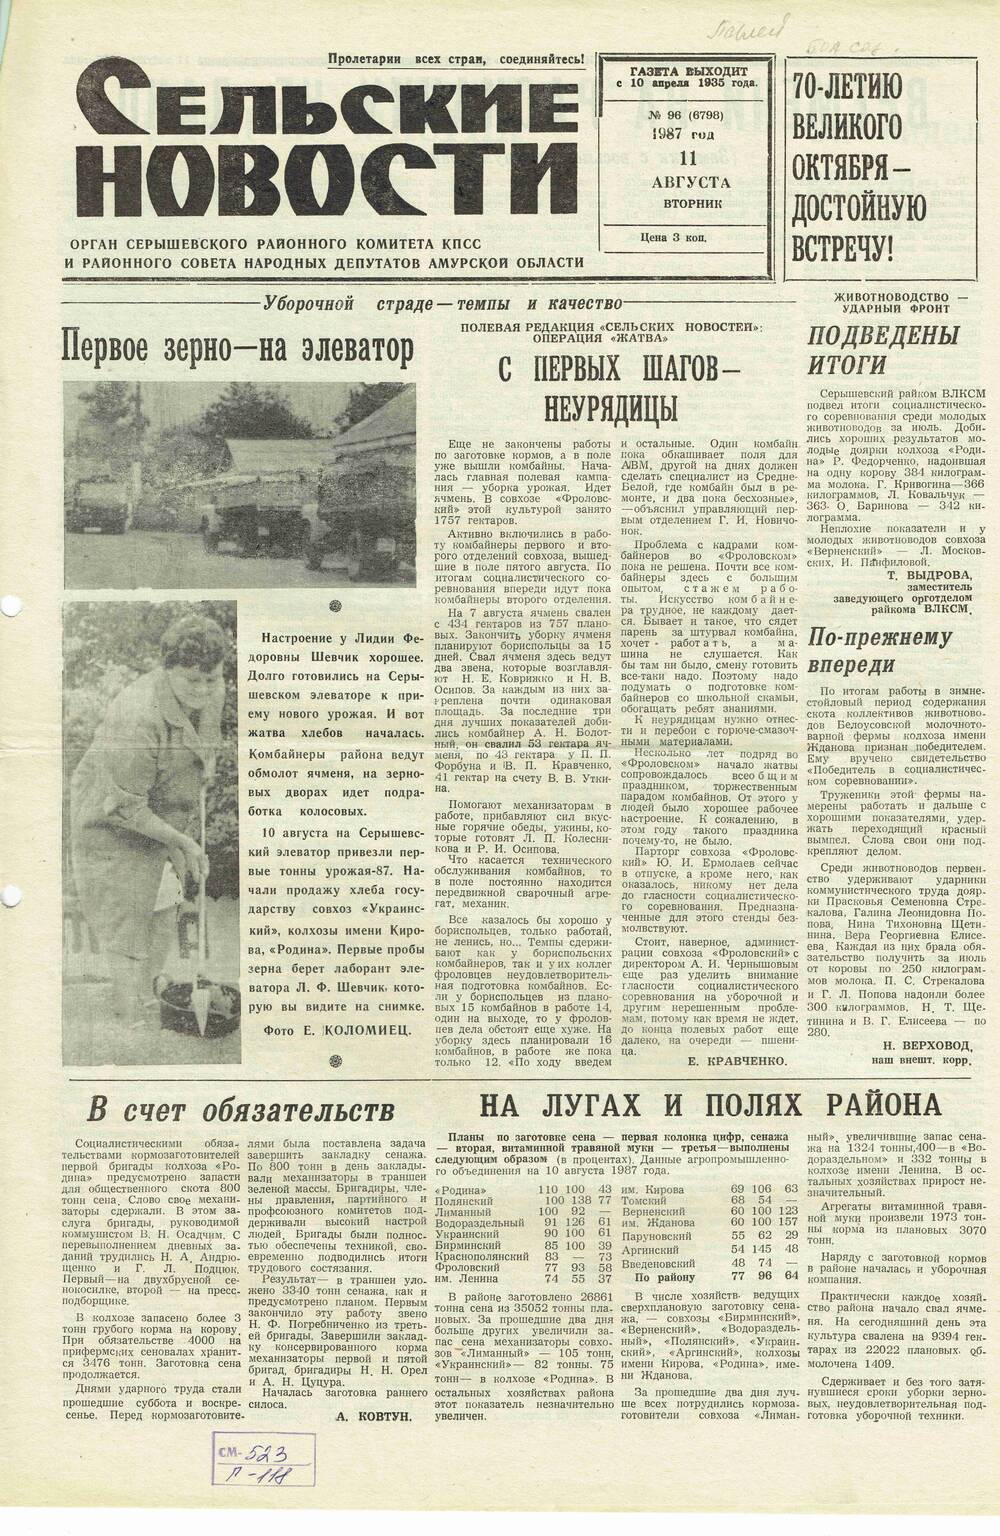 Газета «Сельские новости» №96 11.08.1987 года выпуска.